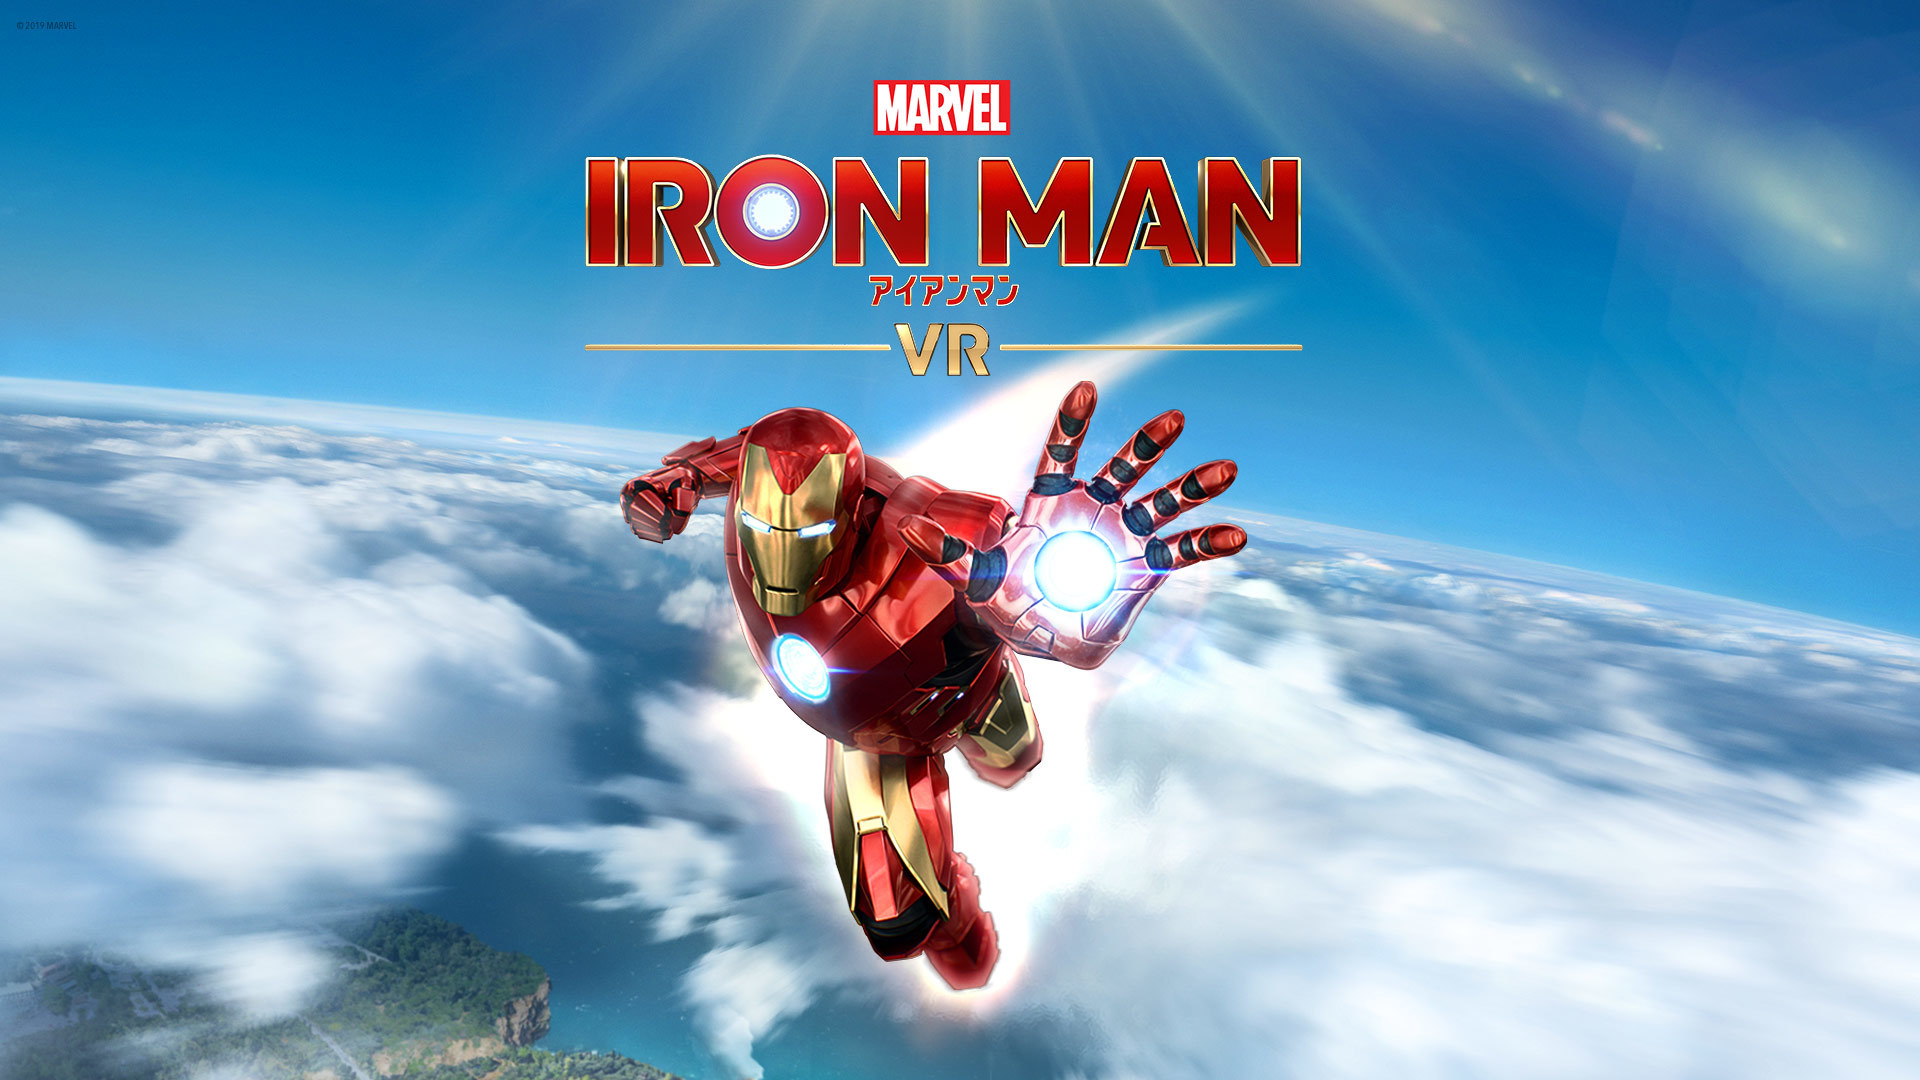 『マーベルアイアンマン VR』メインビジュアル (c) 2019 MARVEL (c)2019 Sony Interactive Entertainment LLC. Developed by Camouflaj, LLC.